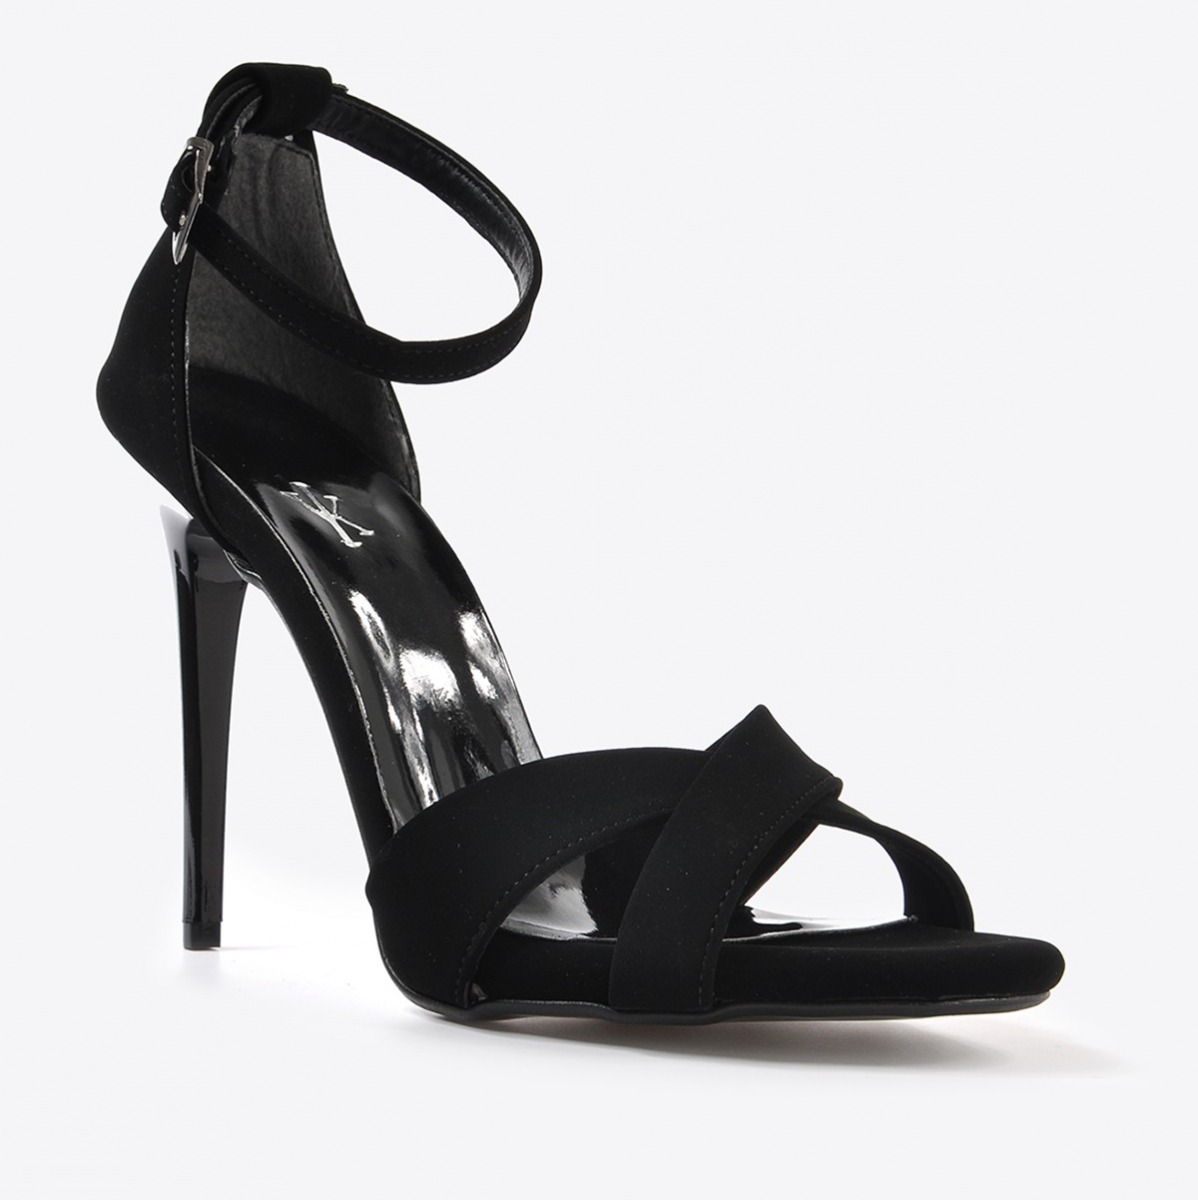 Flo Kadın  Siyah Süet Klasik Topuklu Ayakkabı VZN20-190Y. 1